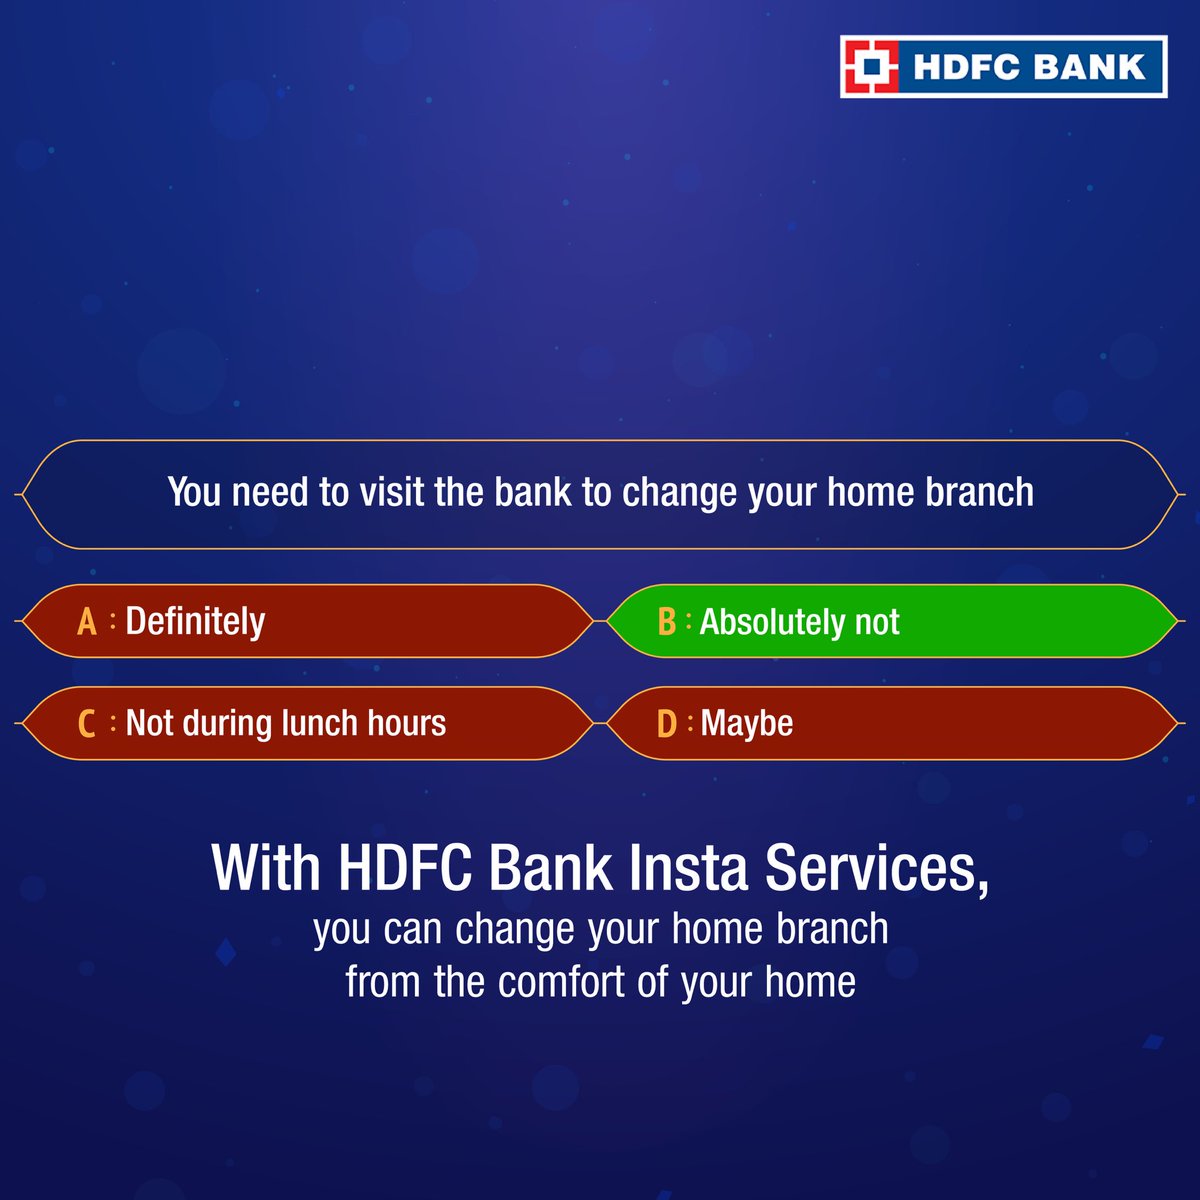 HDFC_Bank tweet picture